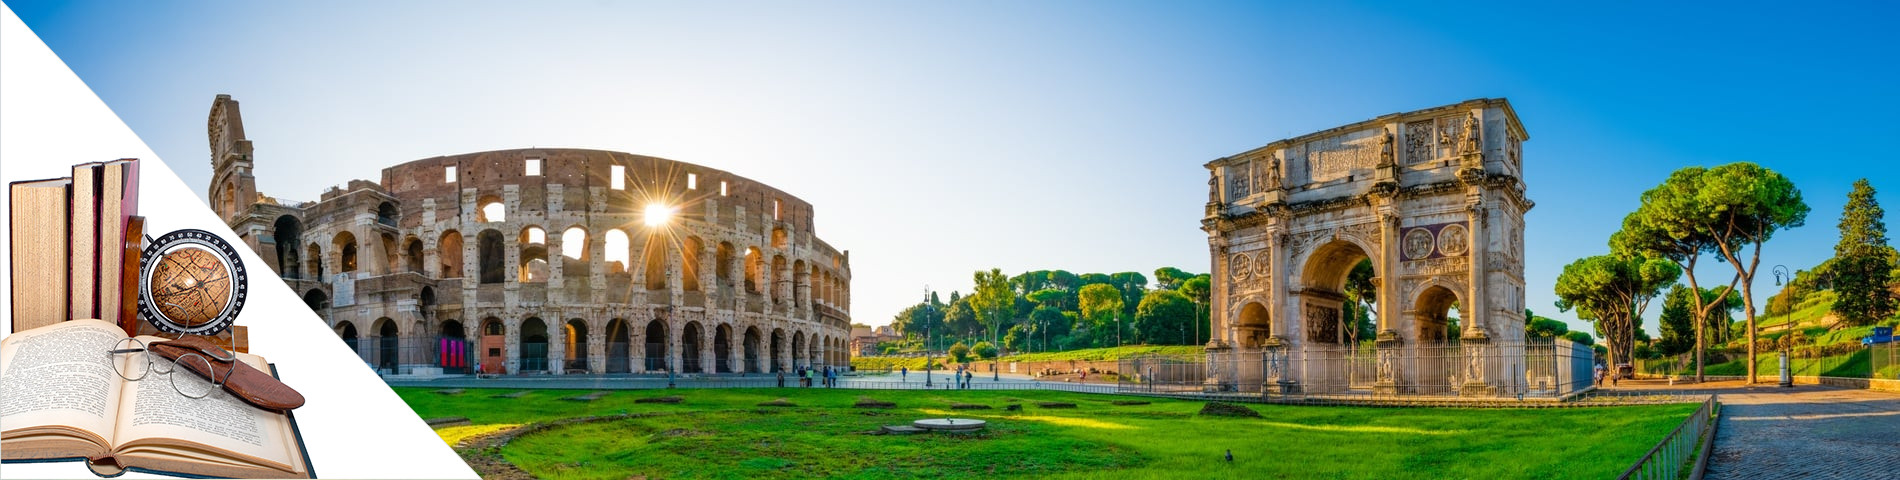 โรม - ภาษาอิตาลีและศิลปะวรรณคดี